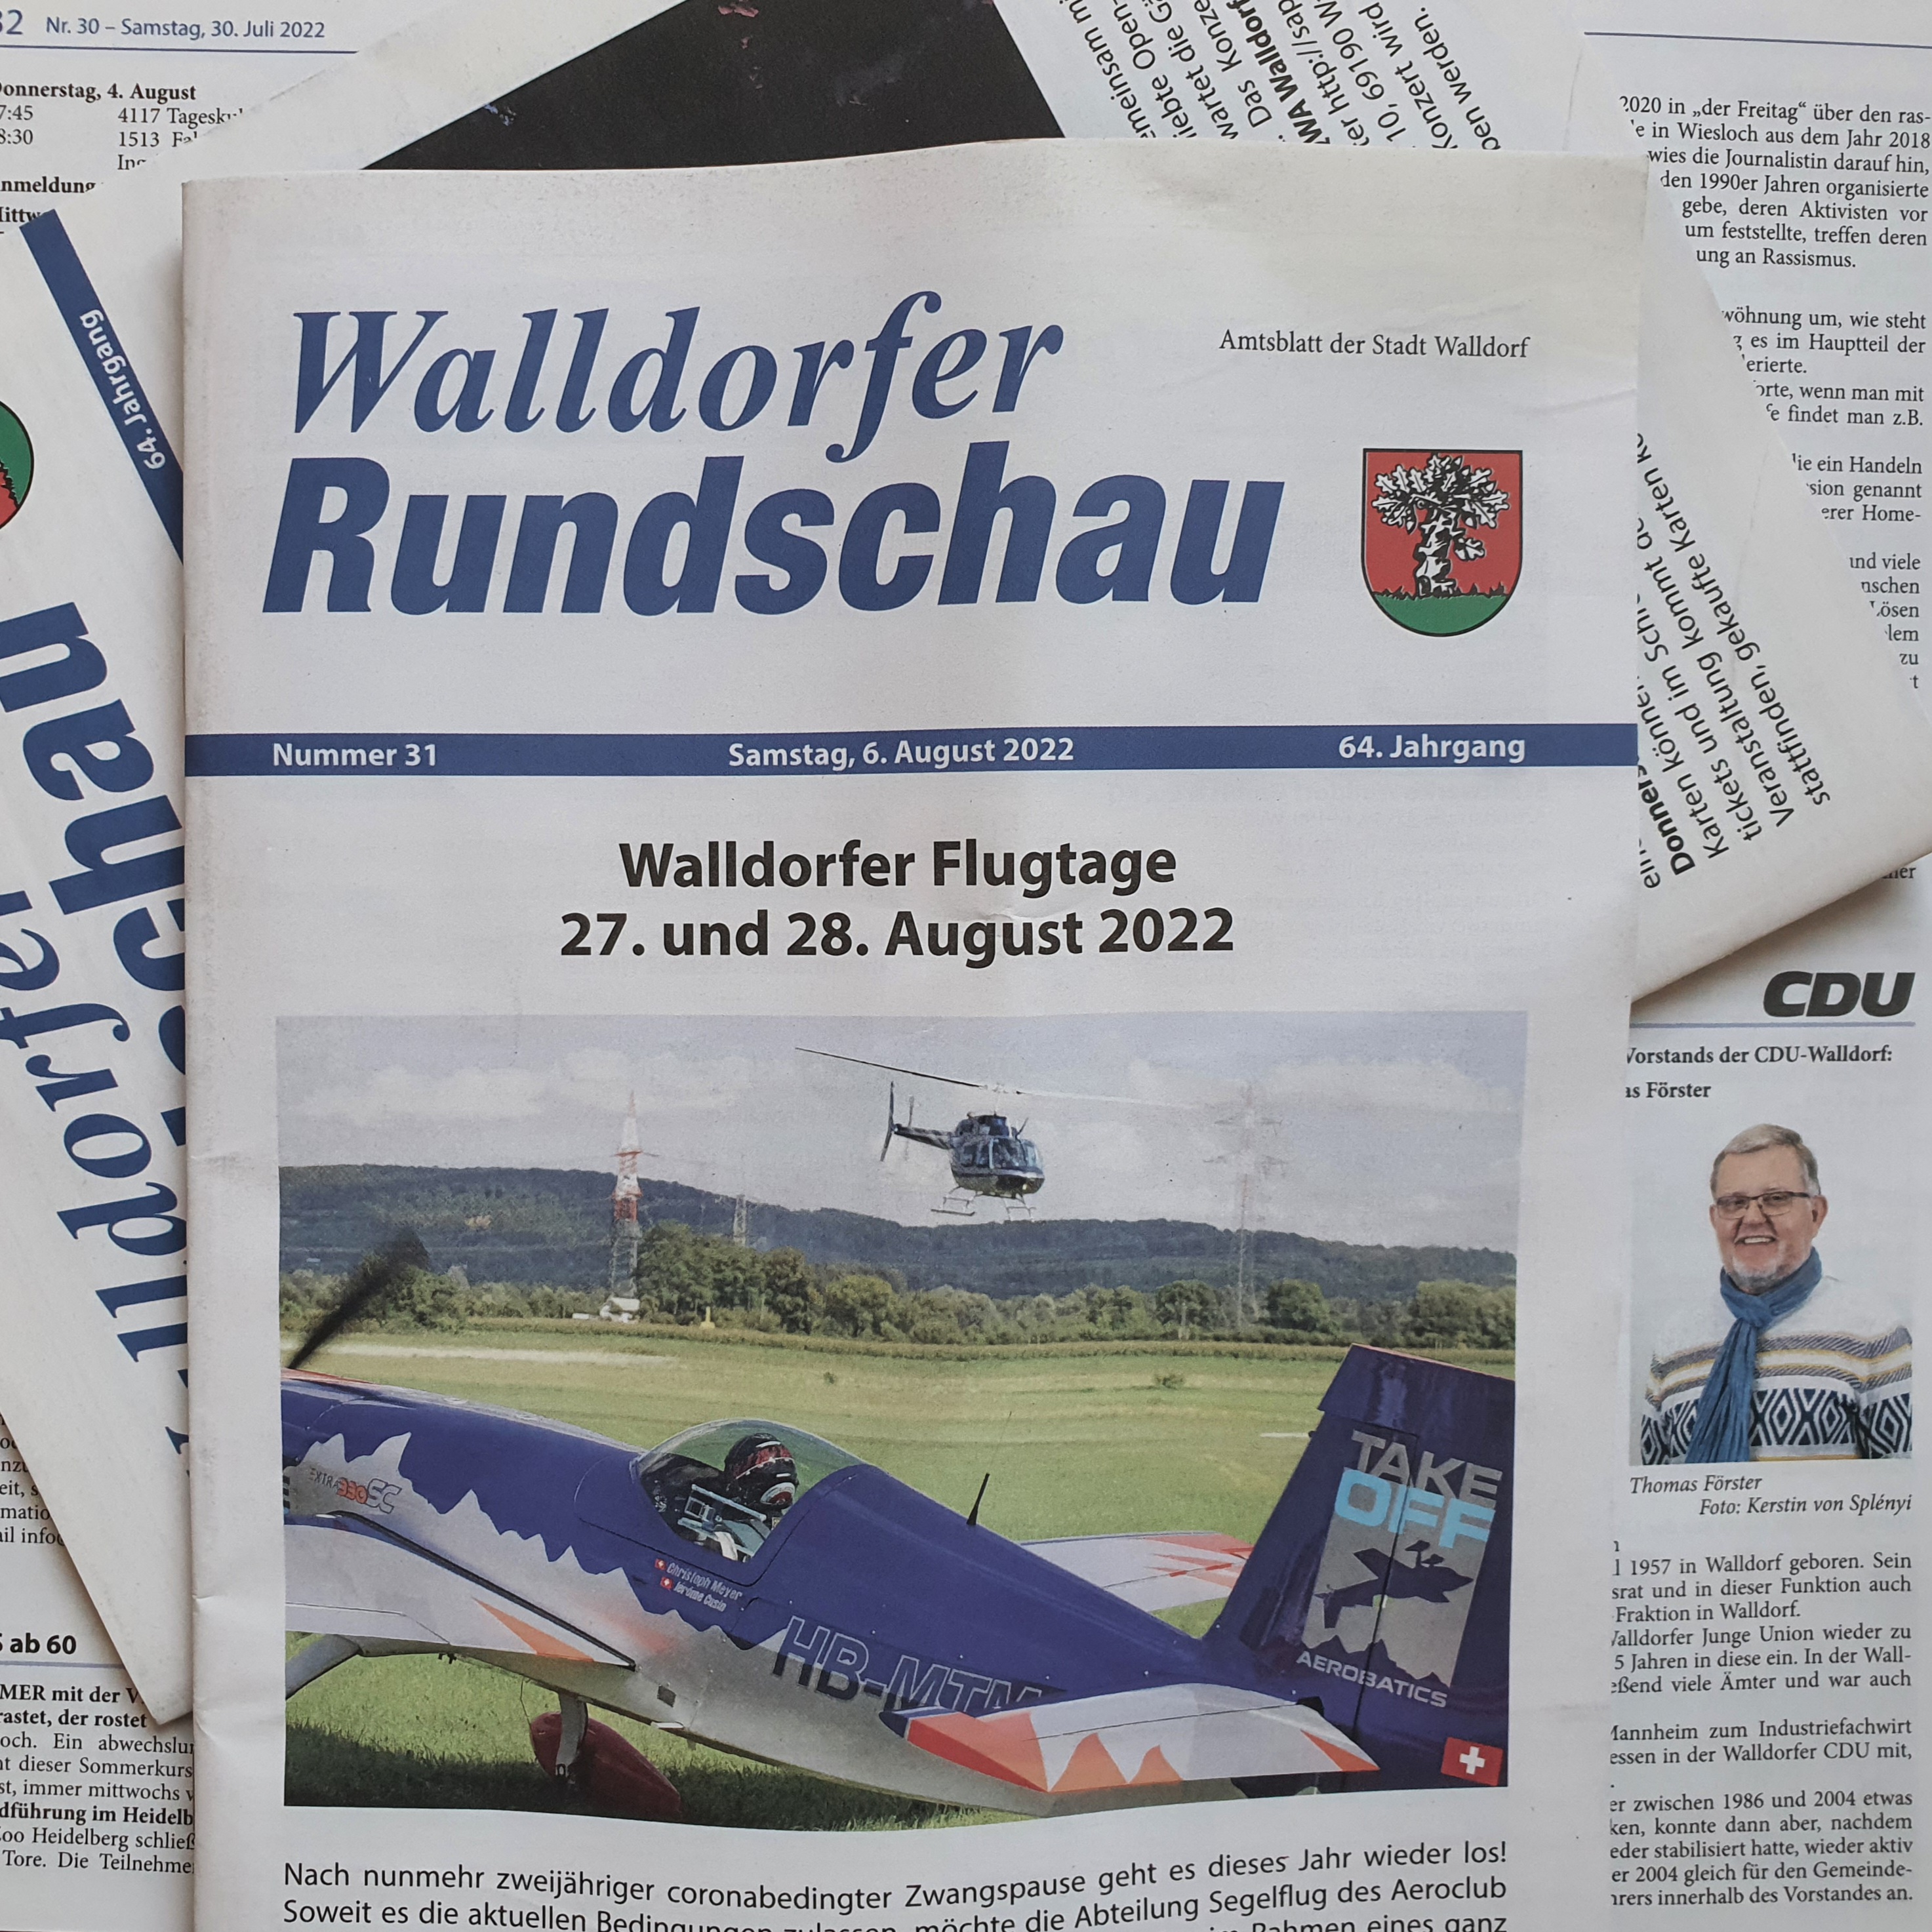 Die Walldorfer Rundschau 2022 Nr. 31 | Foto: Dr. Clemens Kriesel